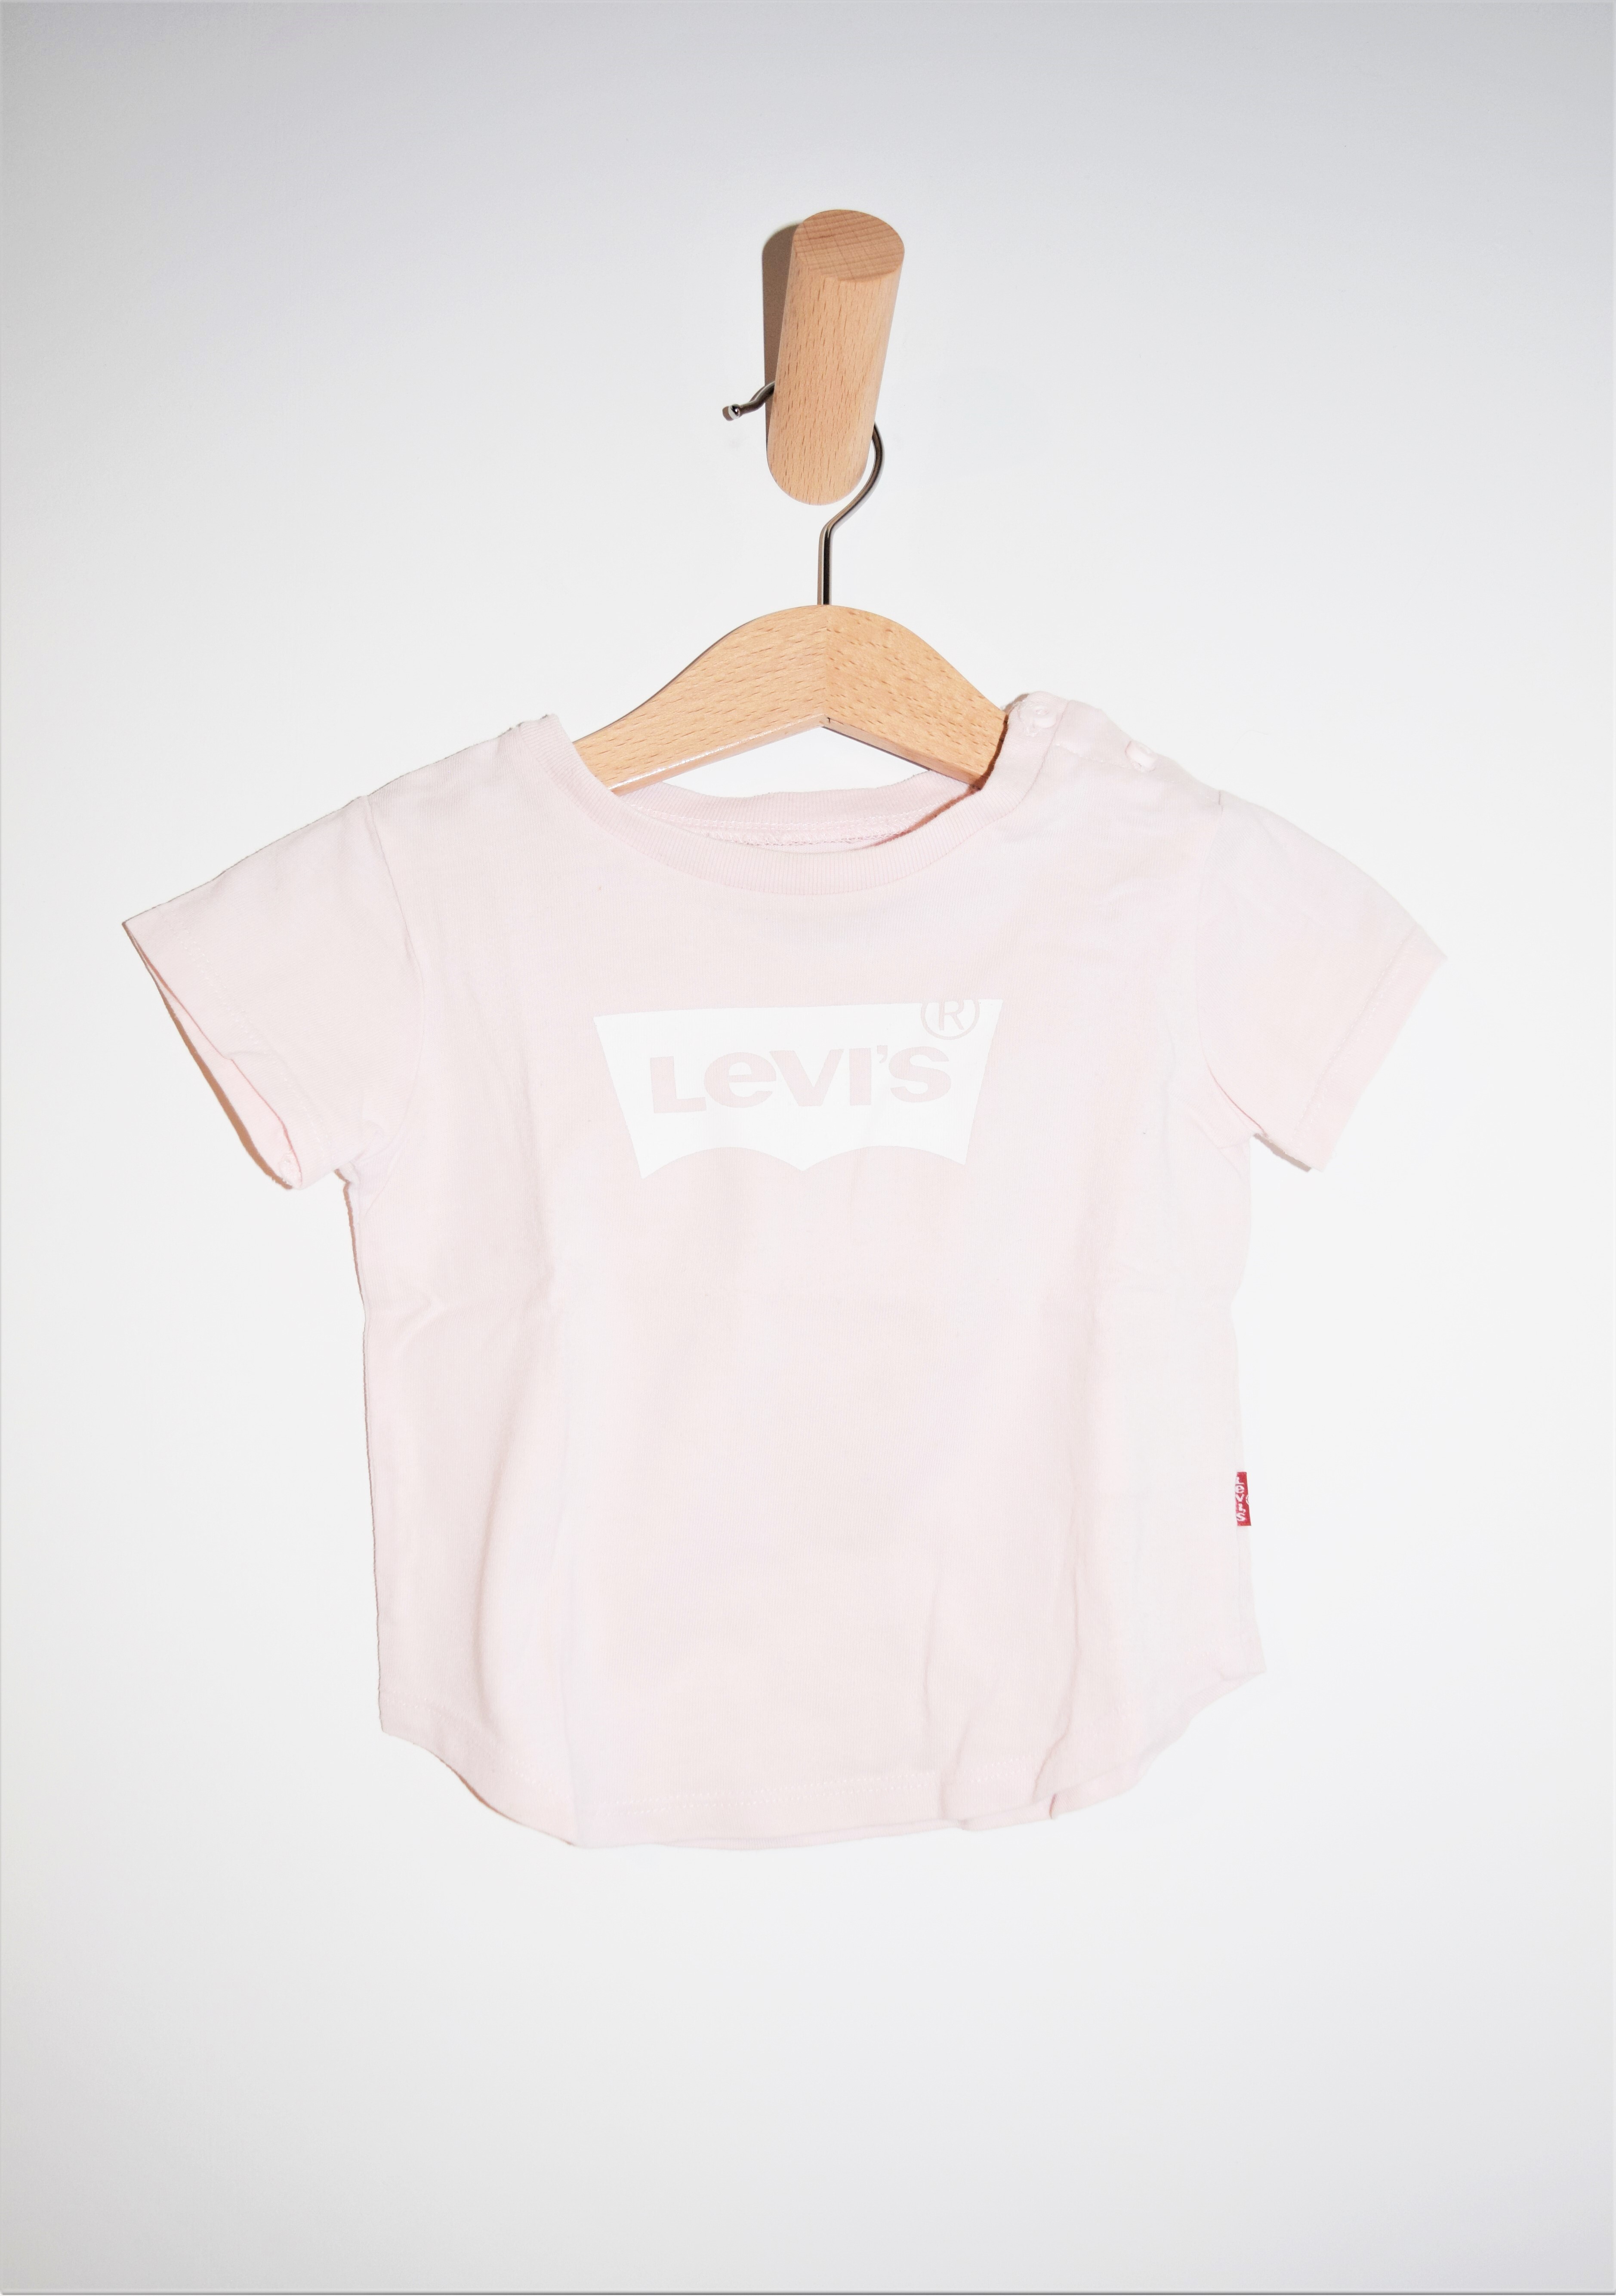 T-shirt, Levi's, 18 maanden 